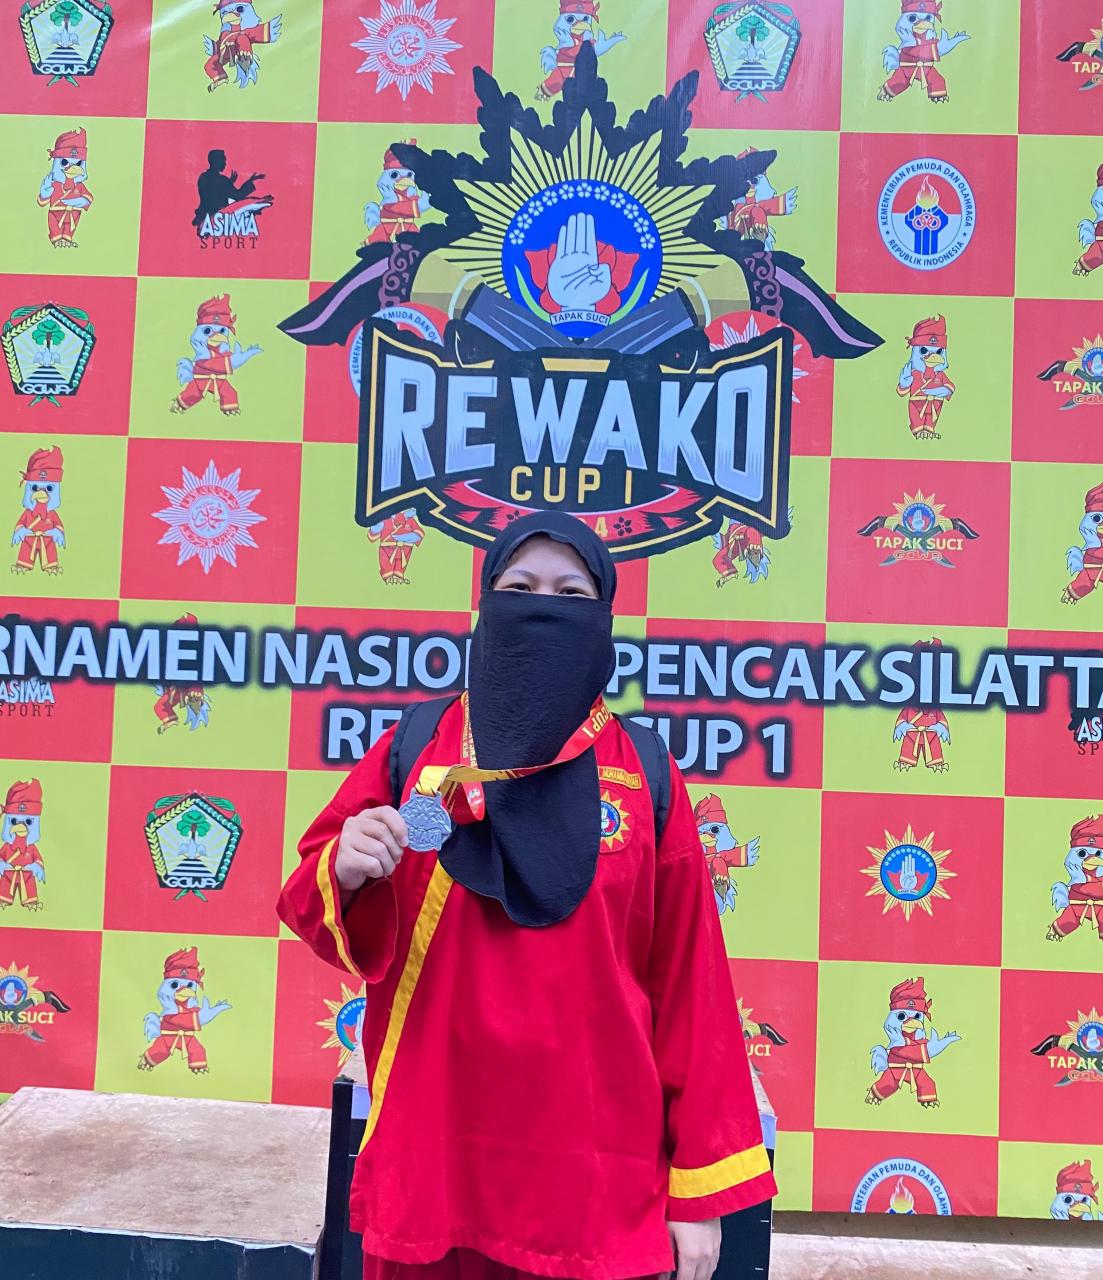 Gambar Mahasiswi BSA FAH Sabet Juara 2 Pencak Silat Tapak Suci Rewako Cup 1